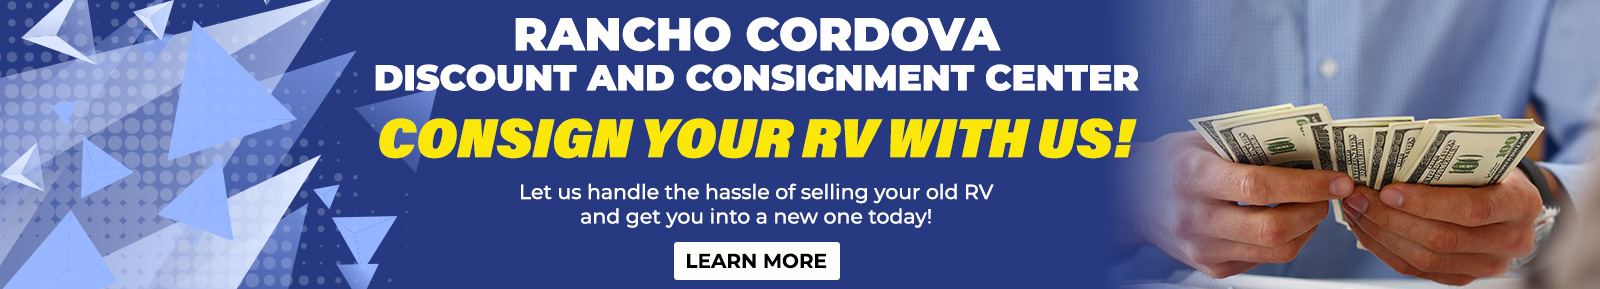 Rancho Cordova Consignment